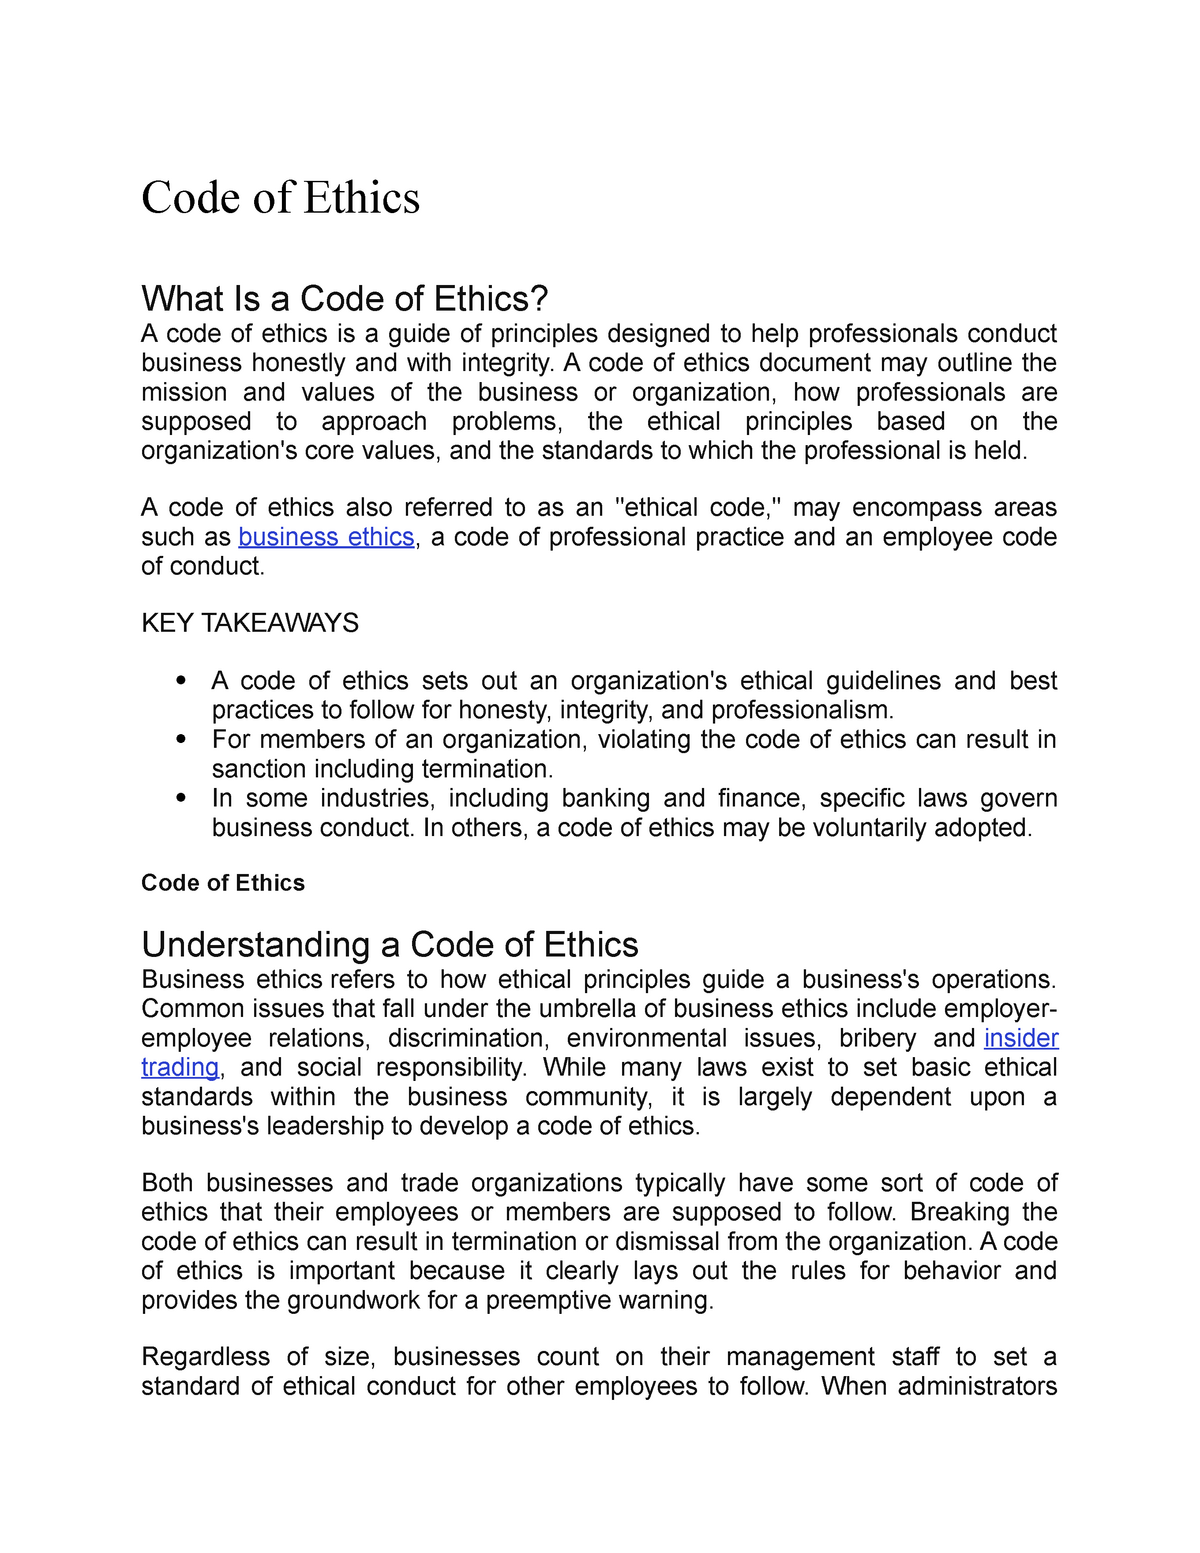 case study code of ethics